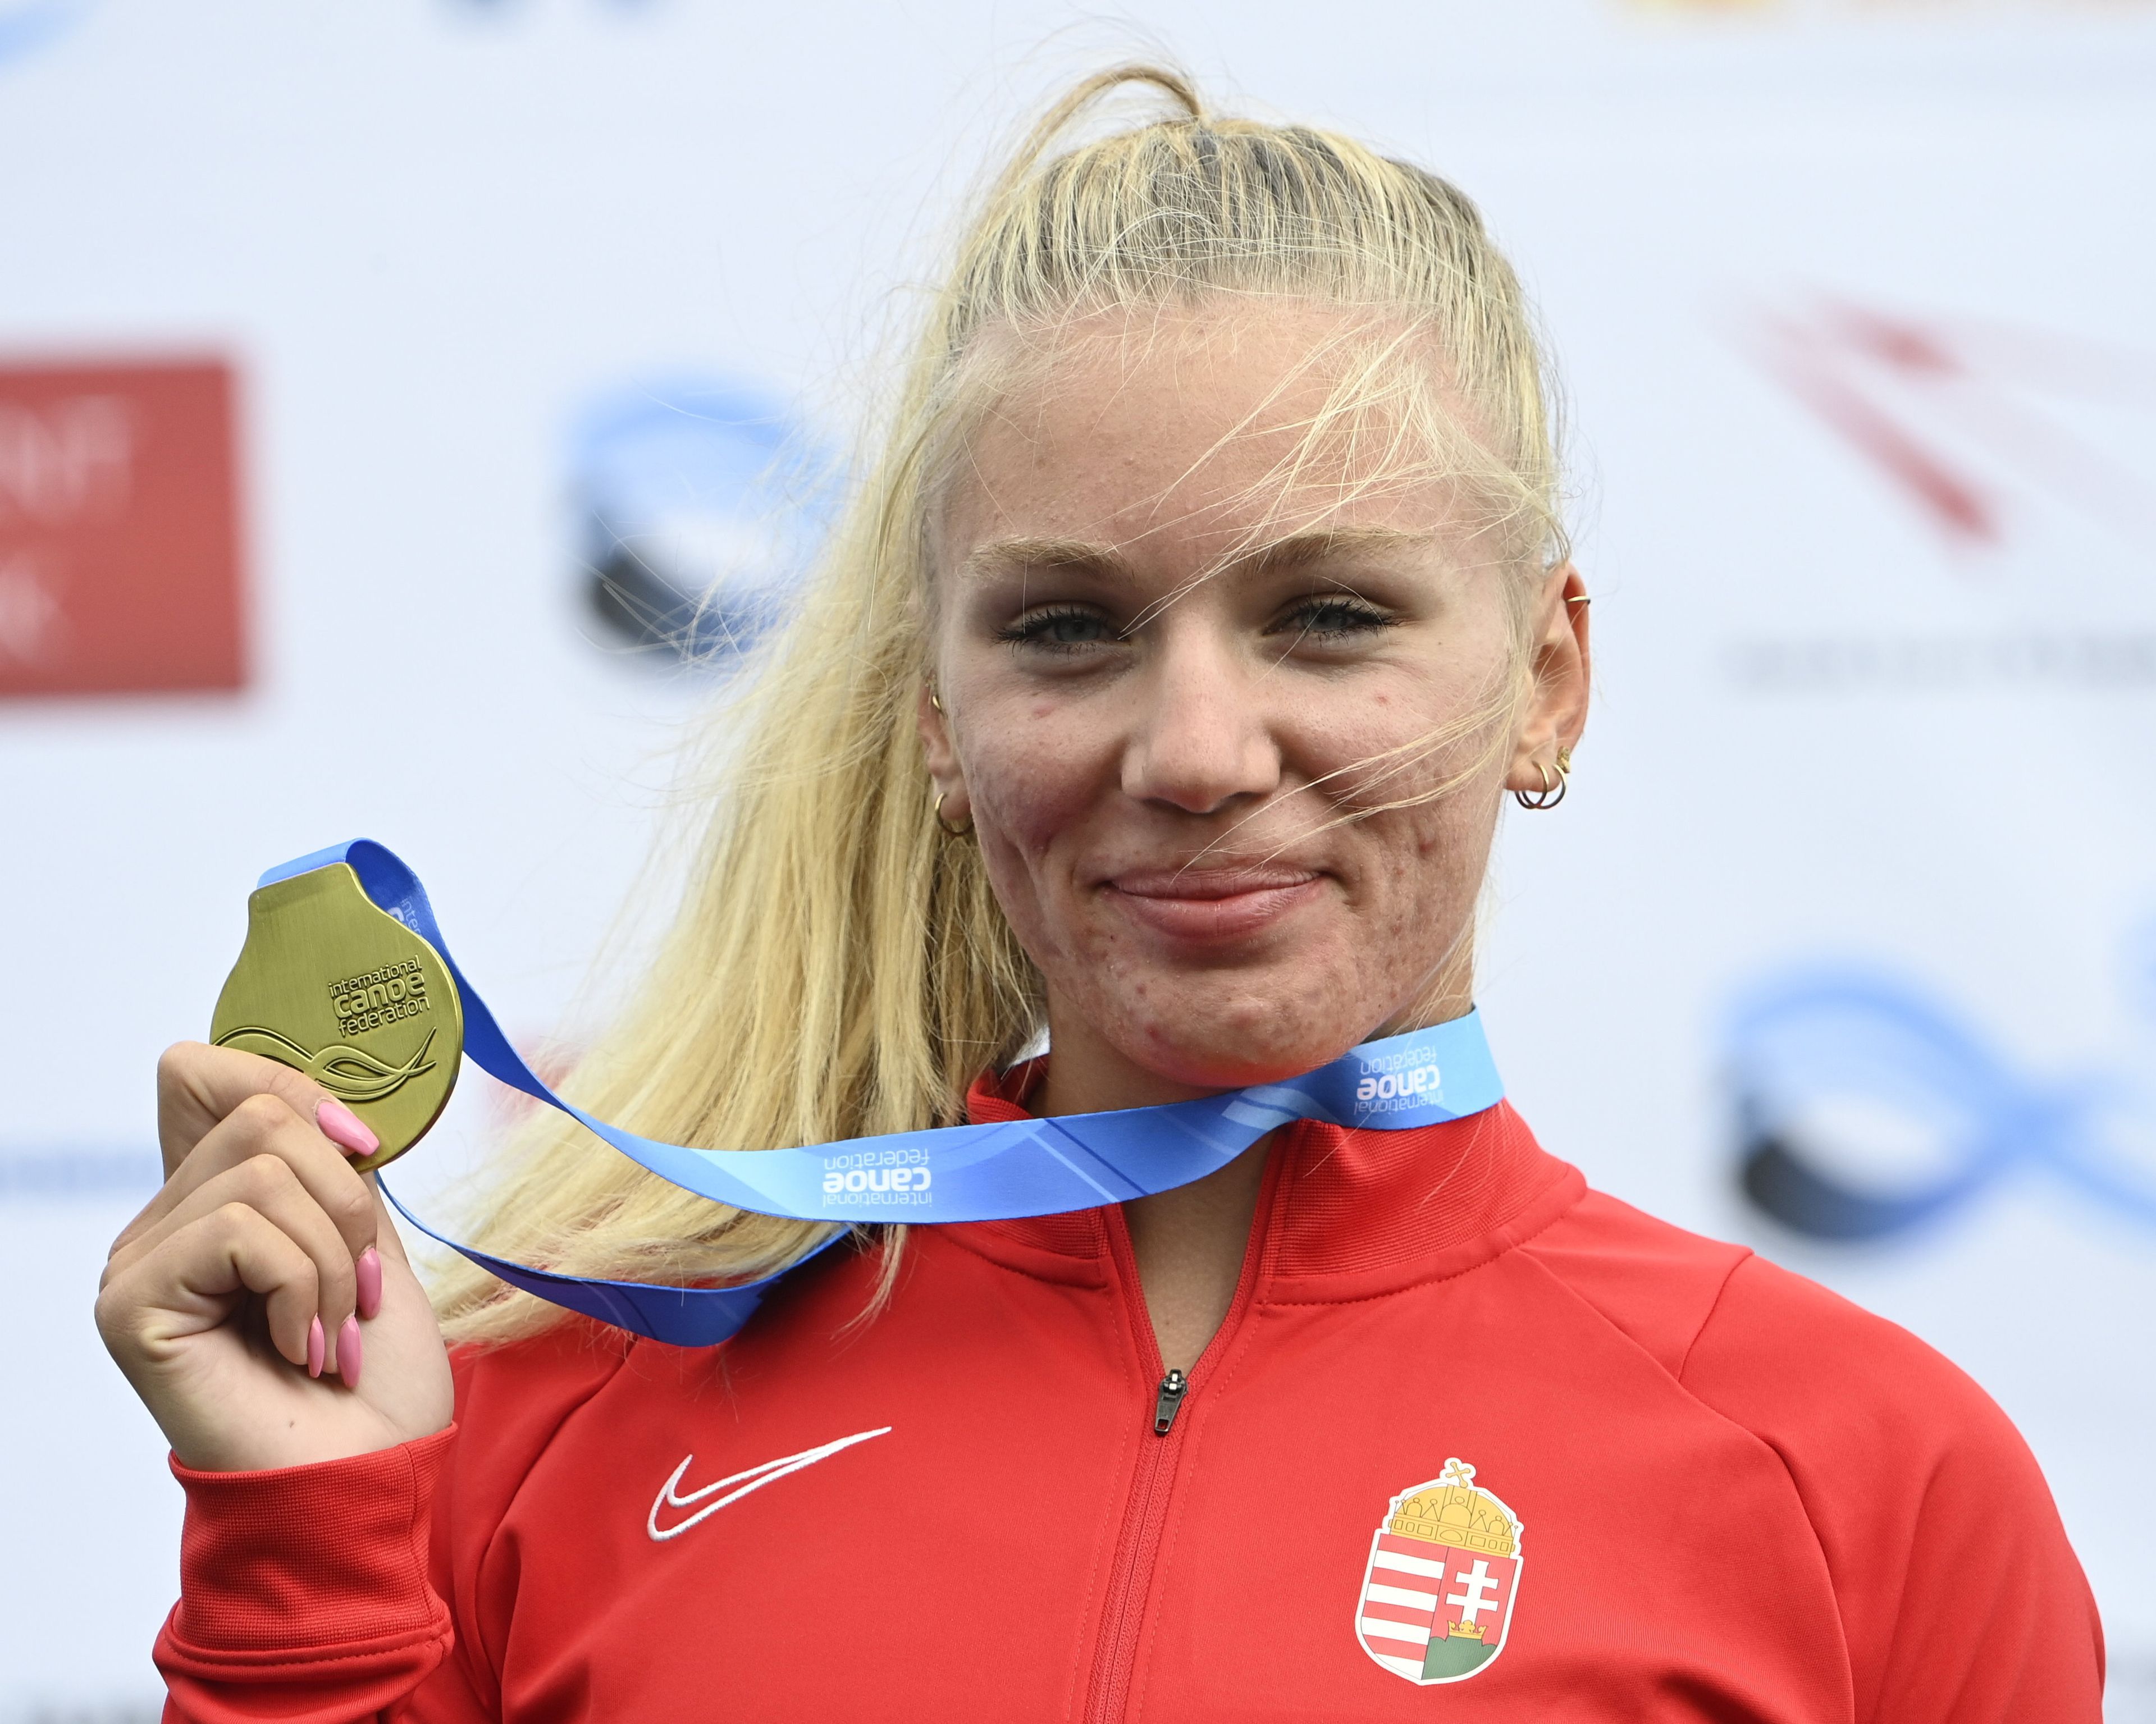 Az aranyérmes Gazsó Alida Dóra a kajak-kenu világbajnokság kajak egyesek 1000 méteres versenyének eredményhirdetésén (Fotó: MTI/Szigetváry Zsolt)